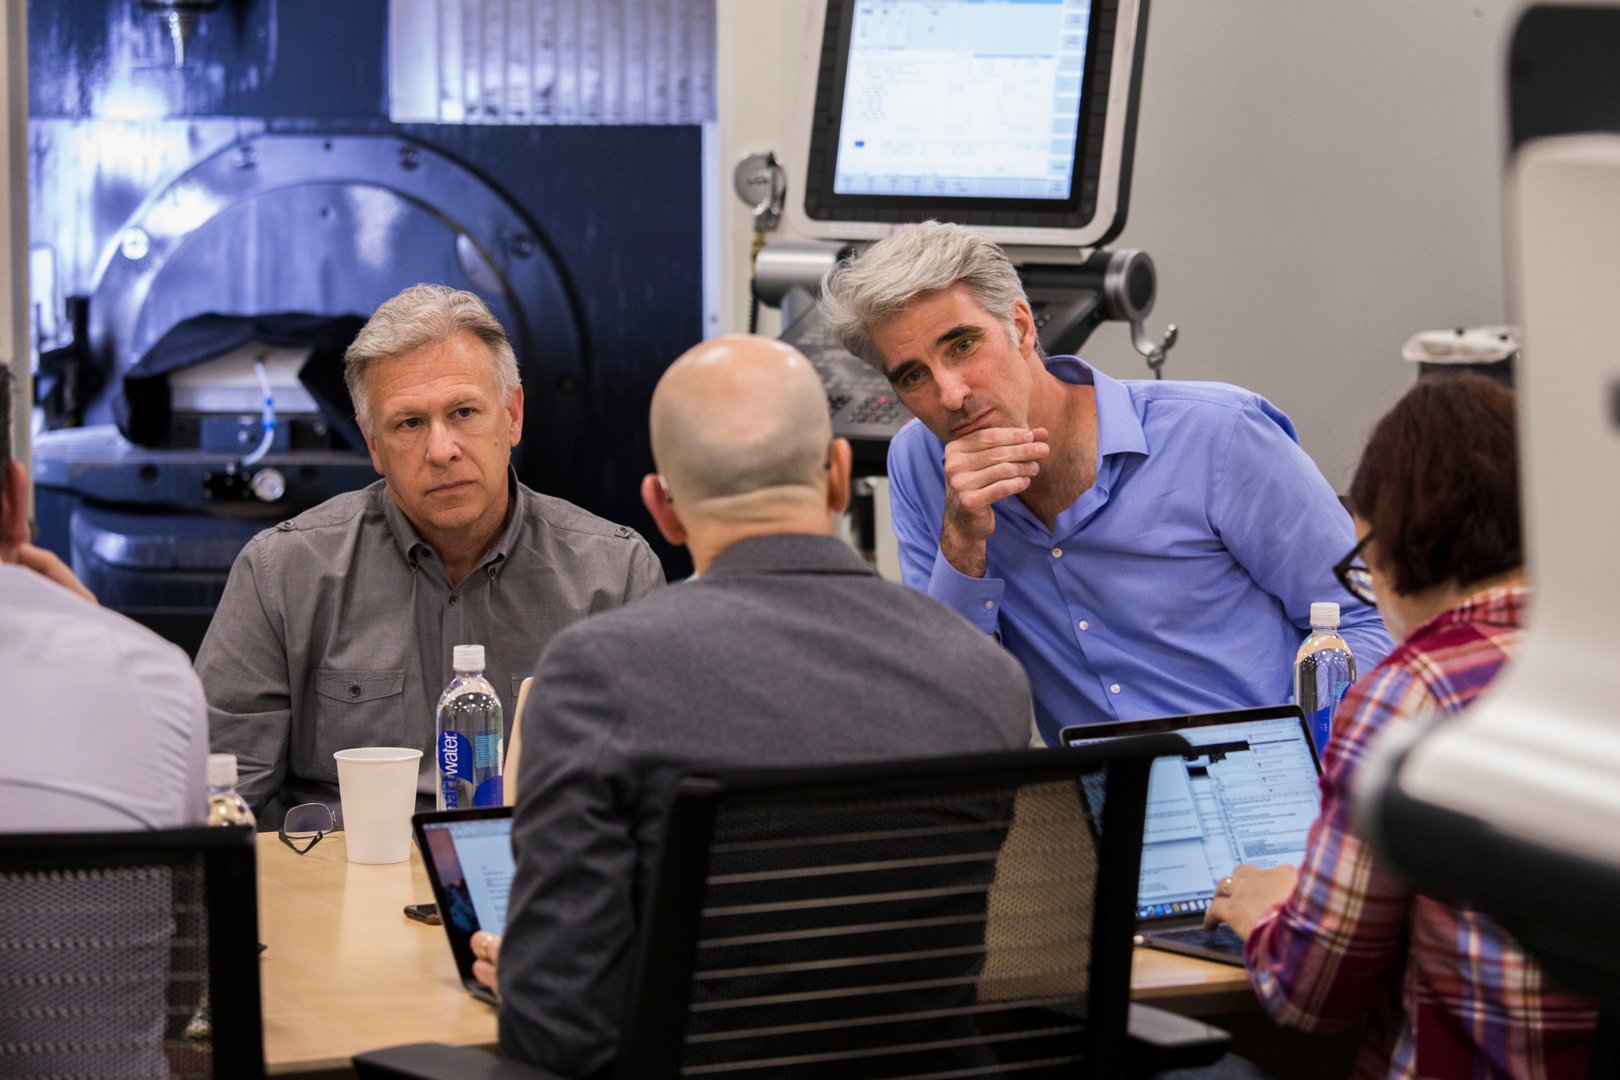 Der ehemalige Apple Global Marketing Manager Phil Schiller (links) und Apples Senior Vice President of Software Development Craig Federighi (rechts) sprechen mit Lance Ulanoff (Vordergrund) über den Mac Pro.